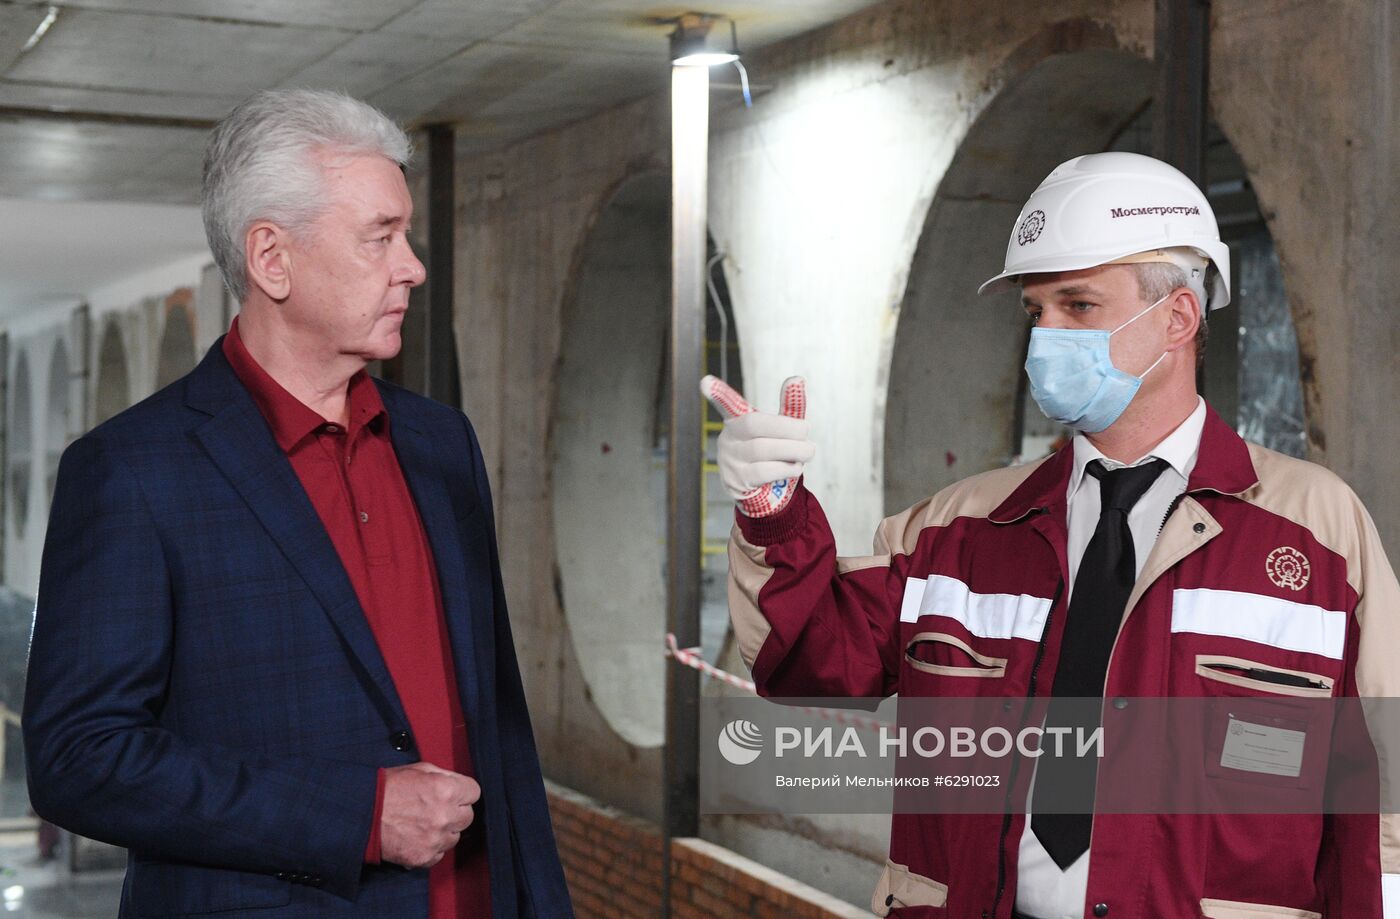 Строительство станции метро "Электрозаводская" 